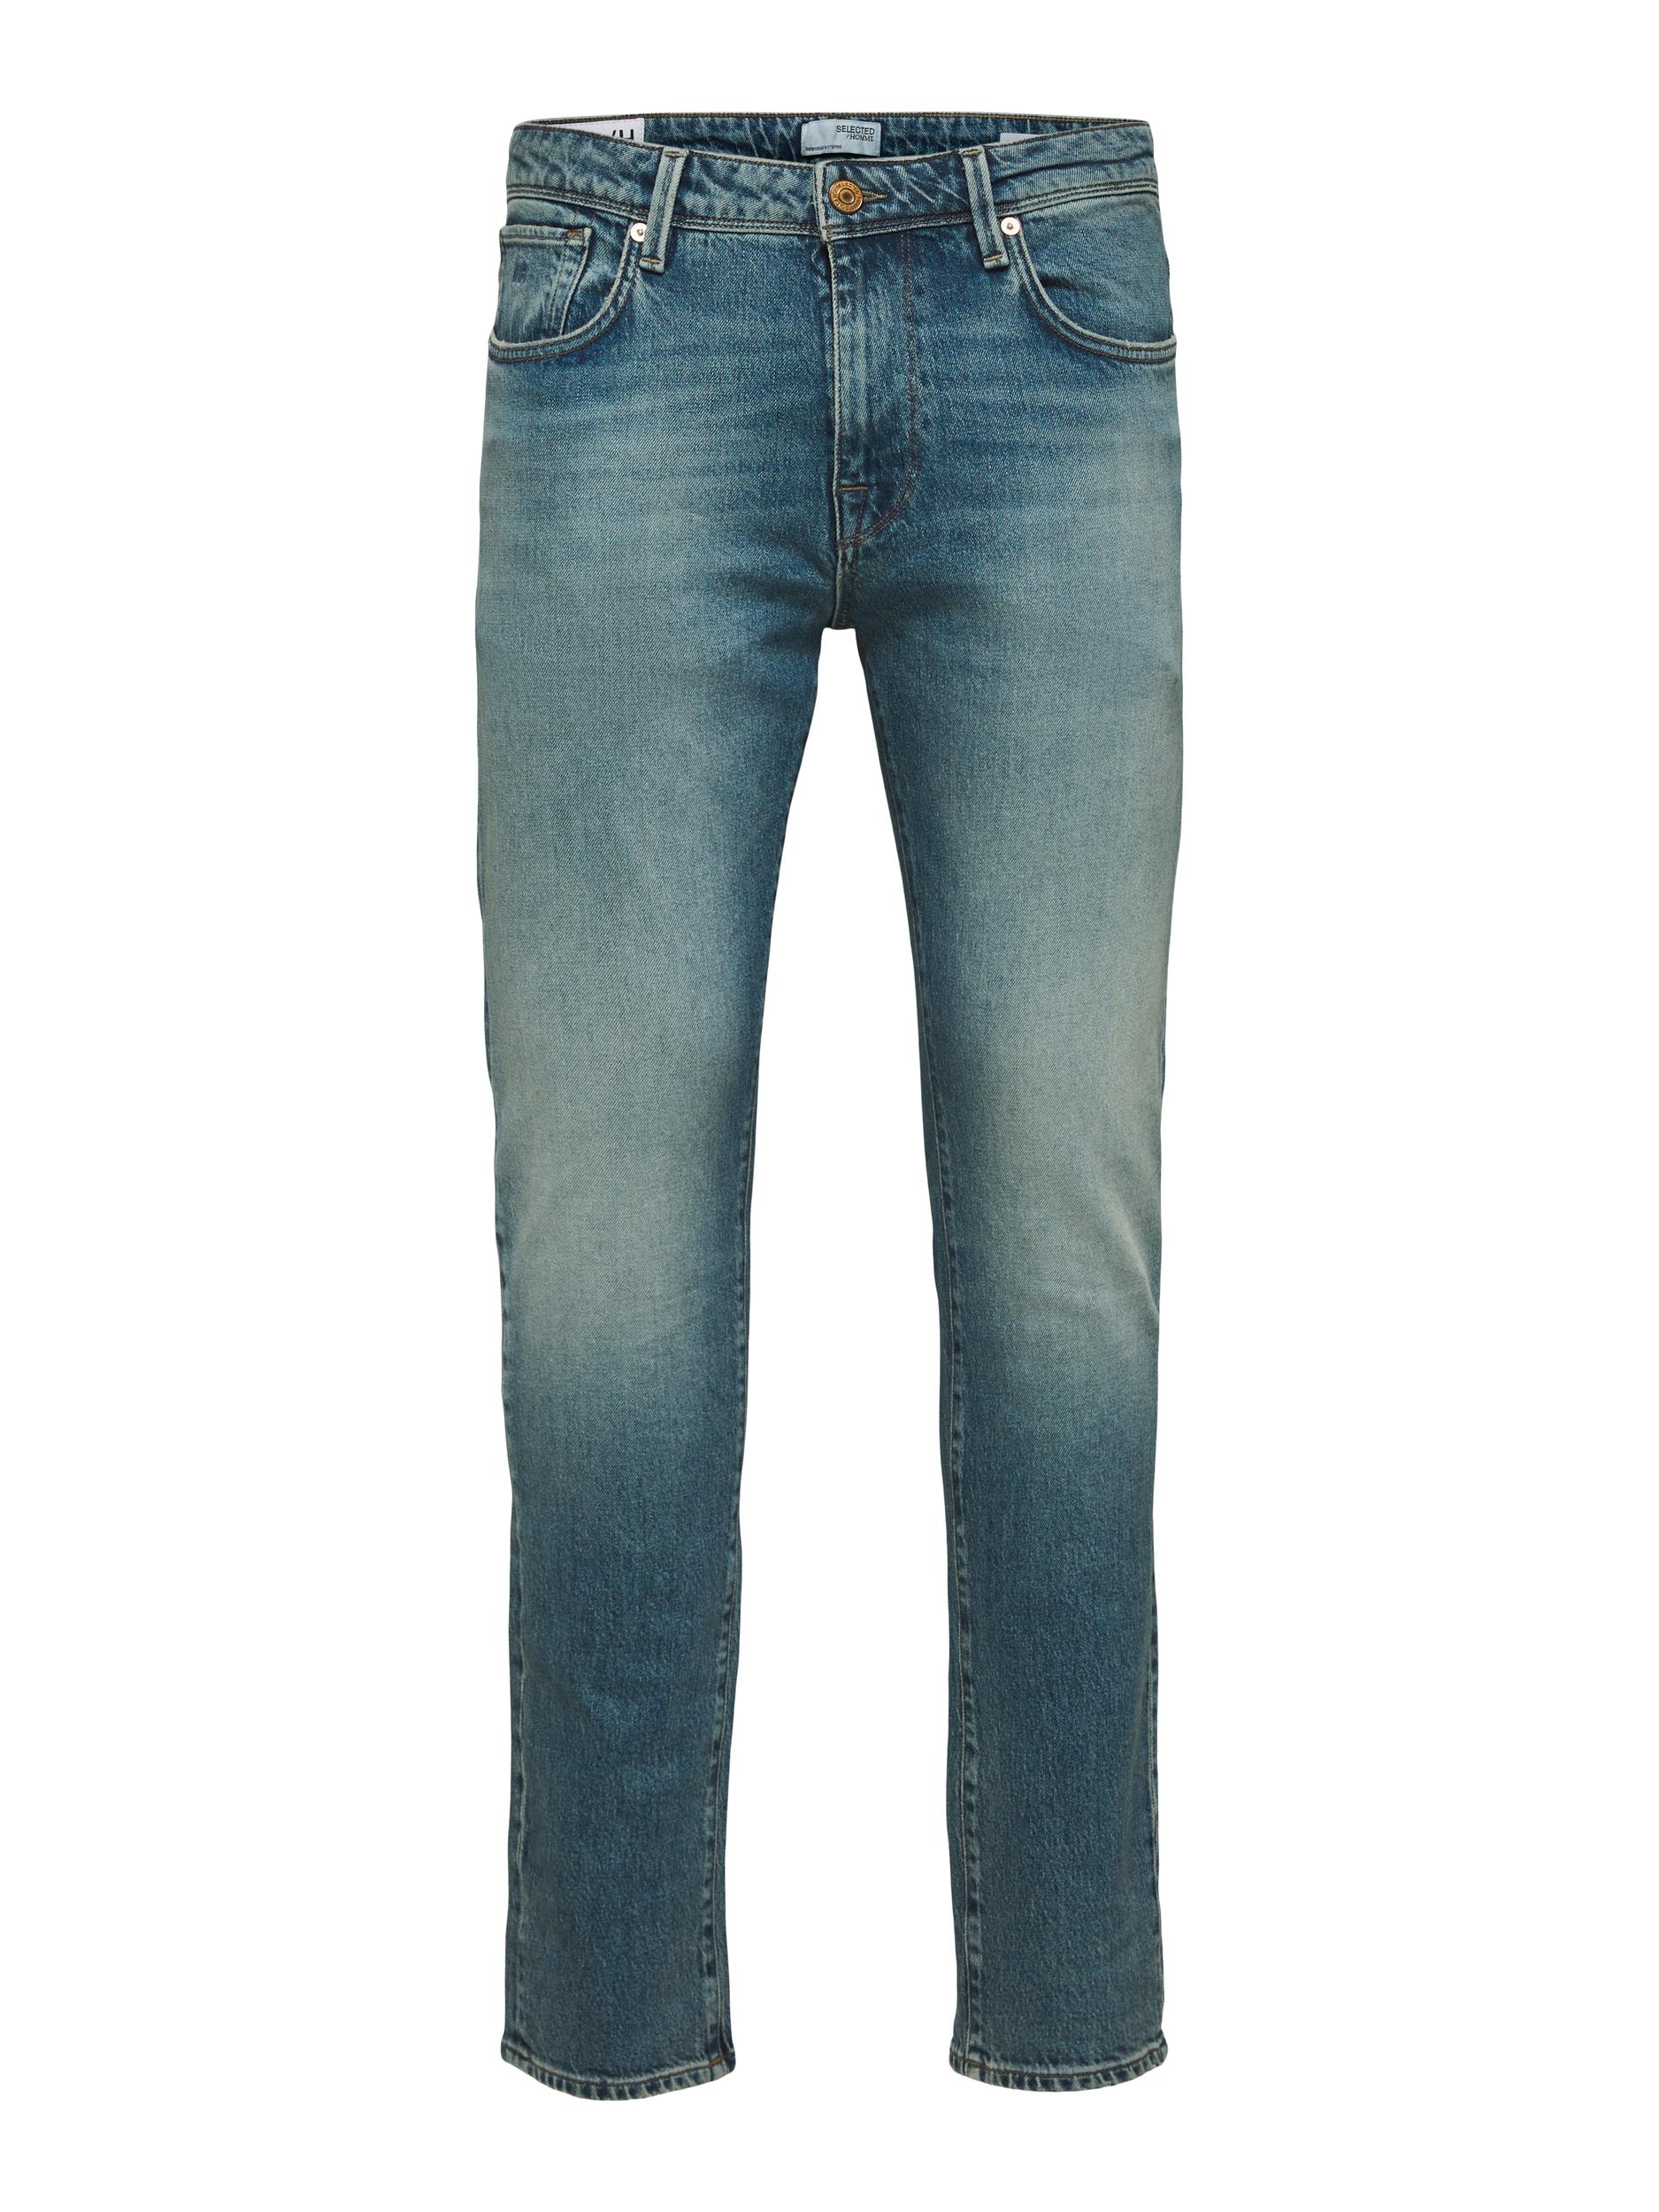 Slim-Leon Jeans, Light Blue Denim, W33/L32